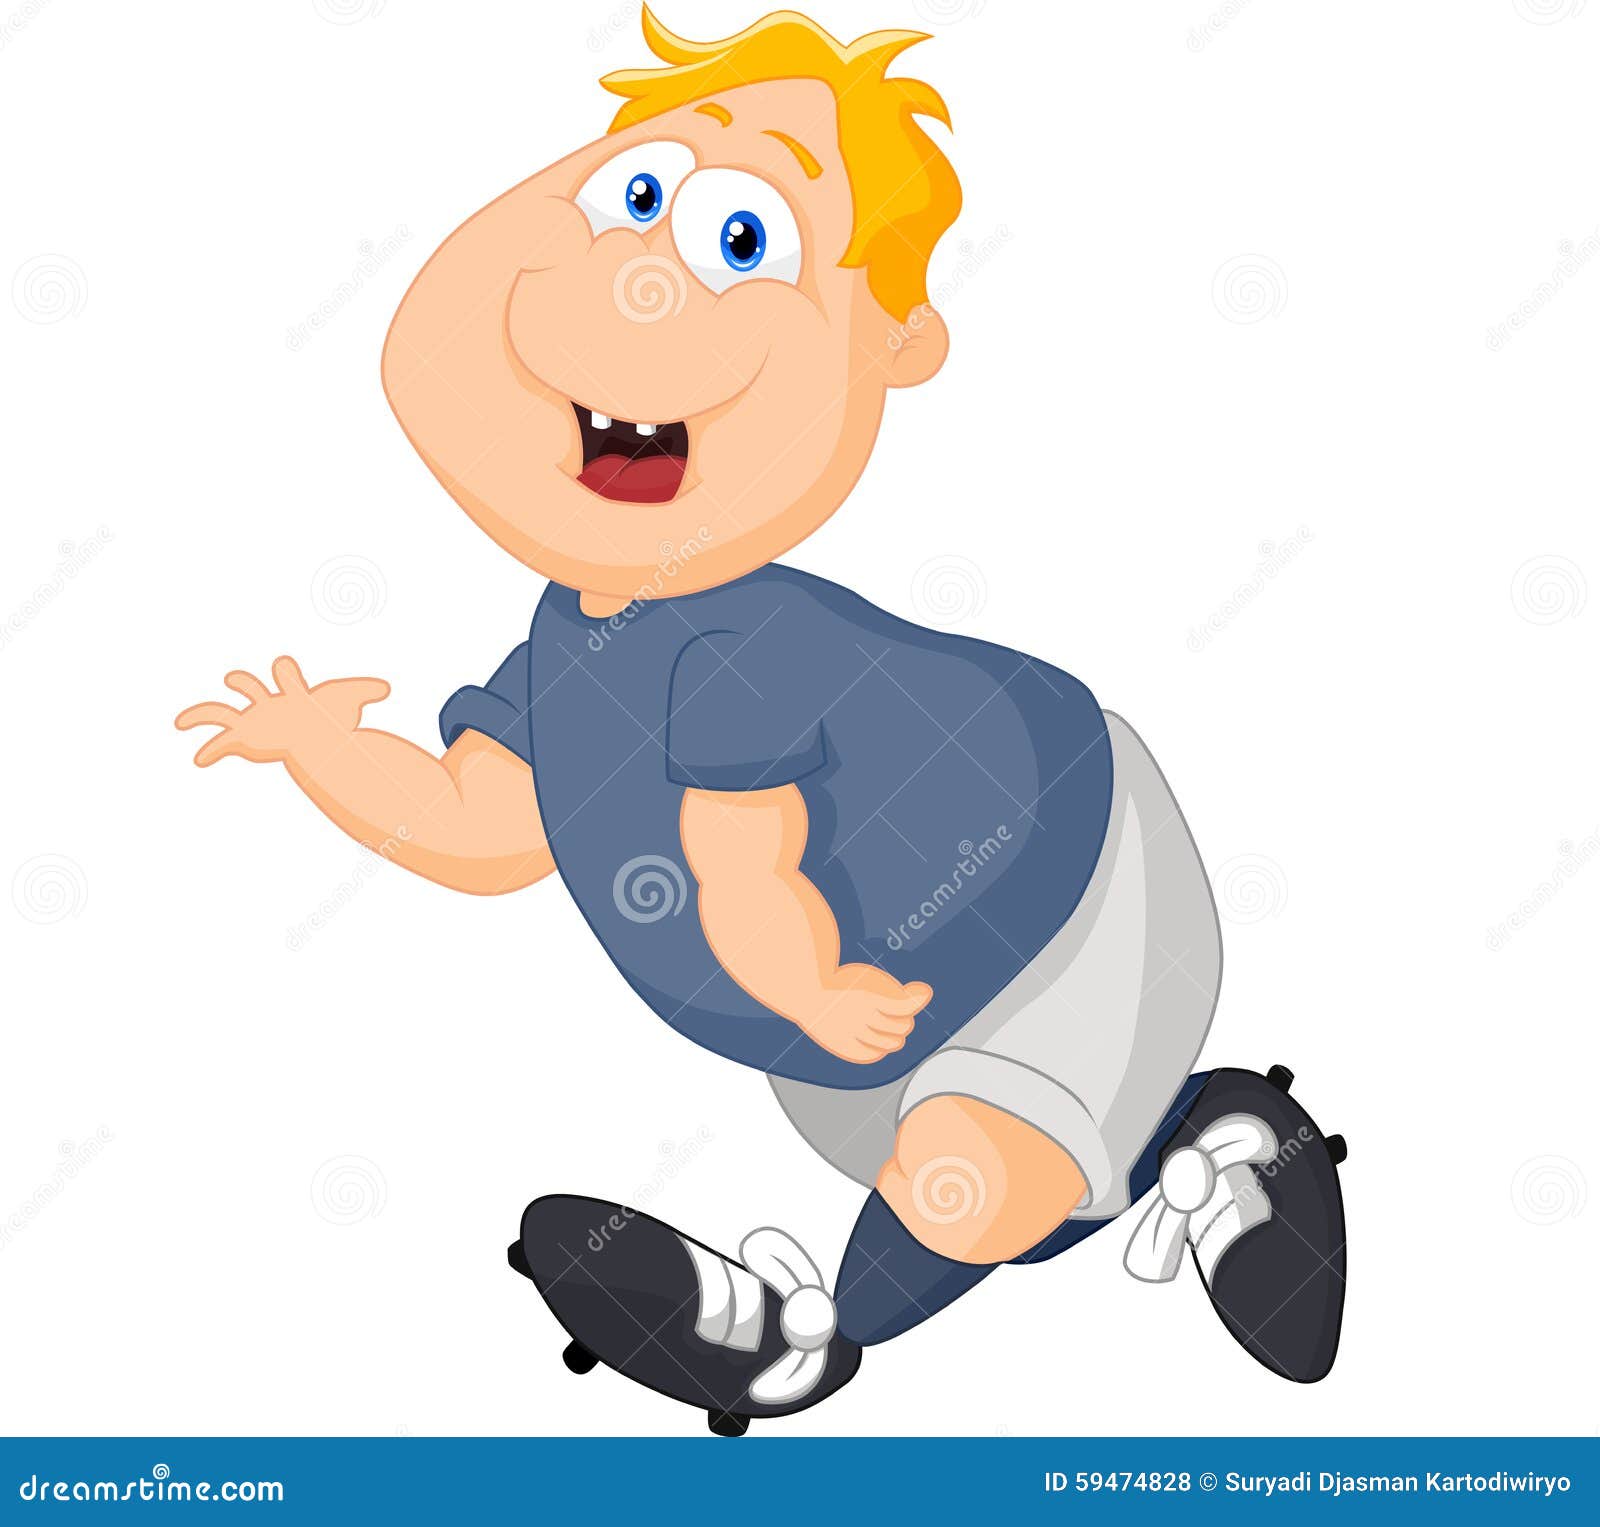 Cartoon big boy running stock vector. Illustration of runners - 59474828